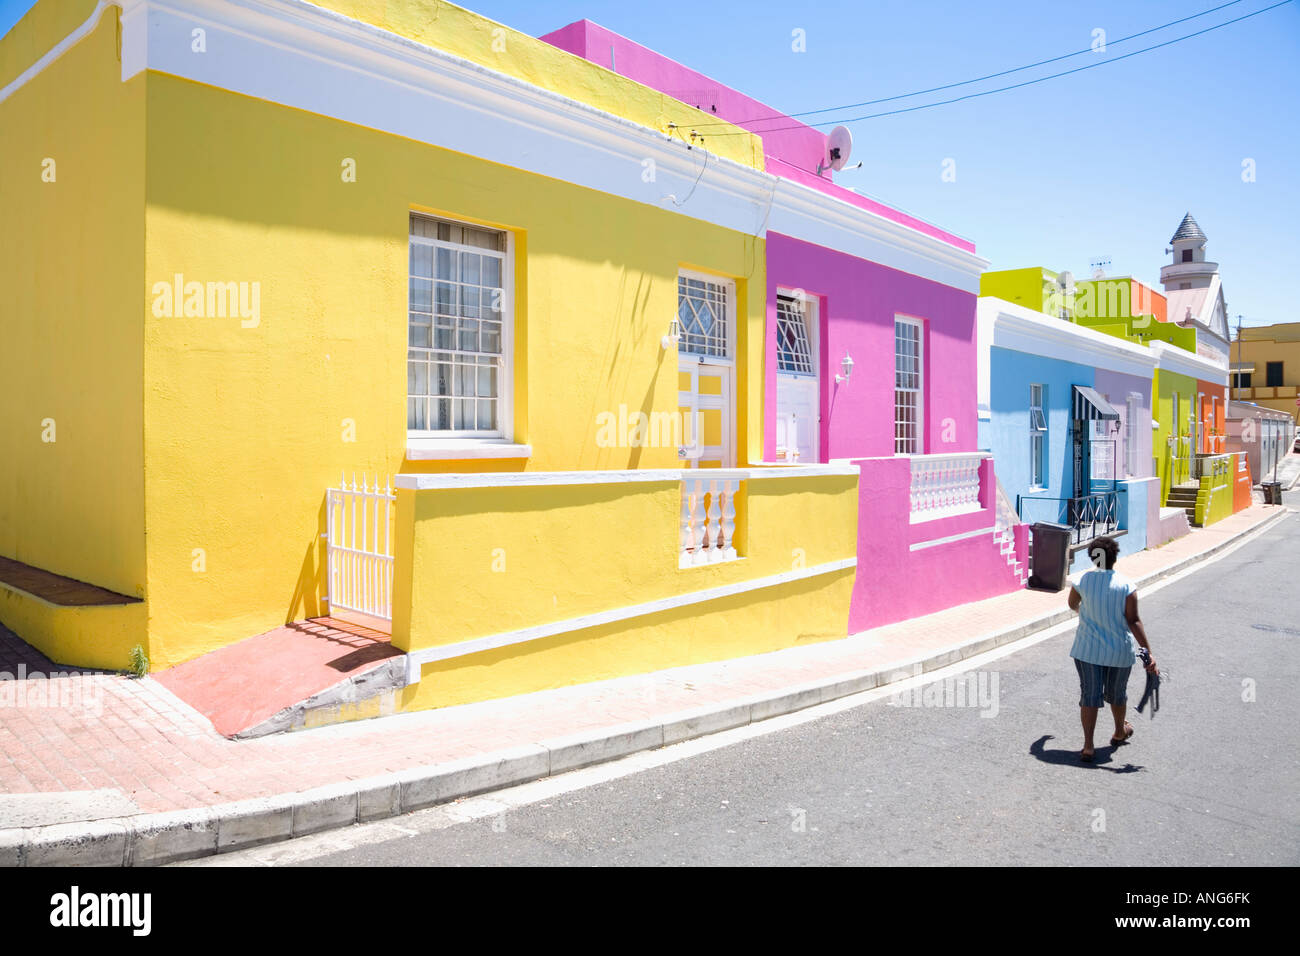 Maisons multicolores dans le Bo Kaap district de Cape Town Afrique du Sud Banque D'Images